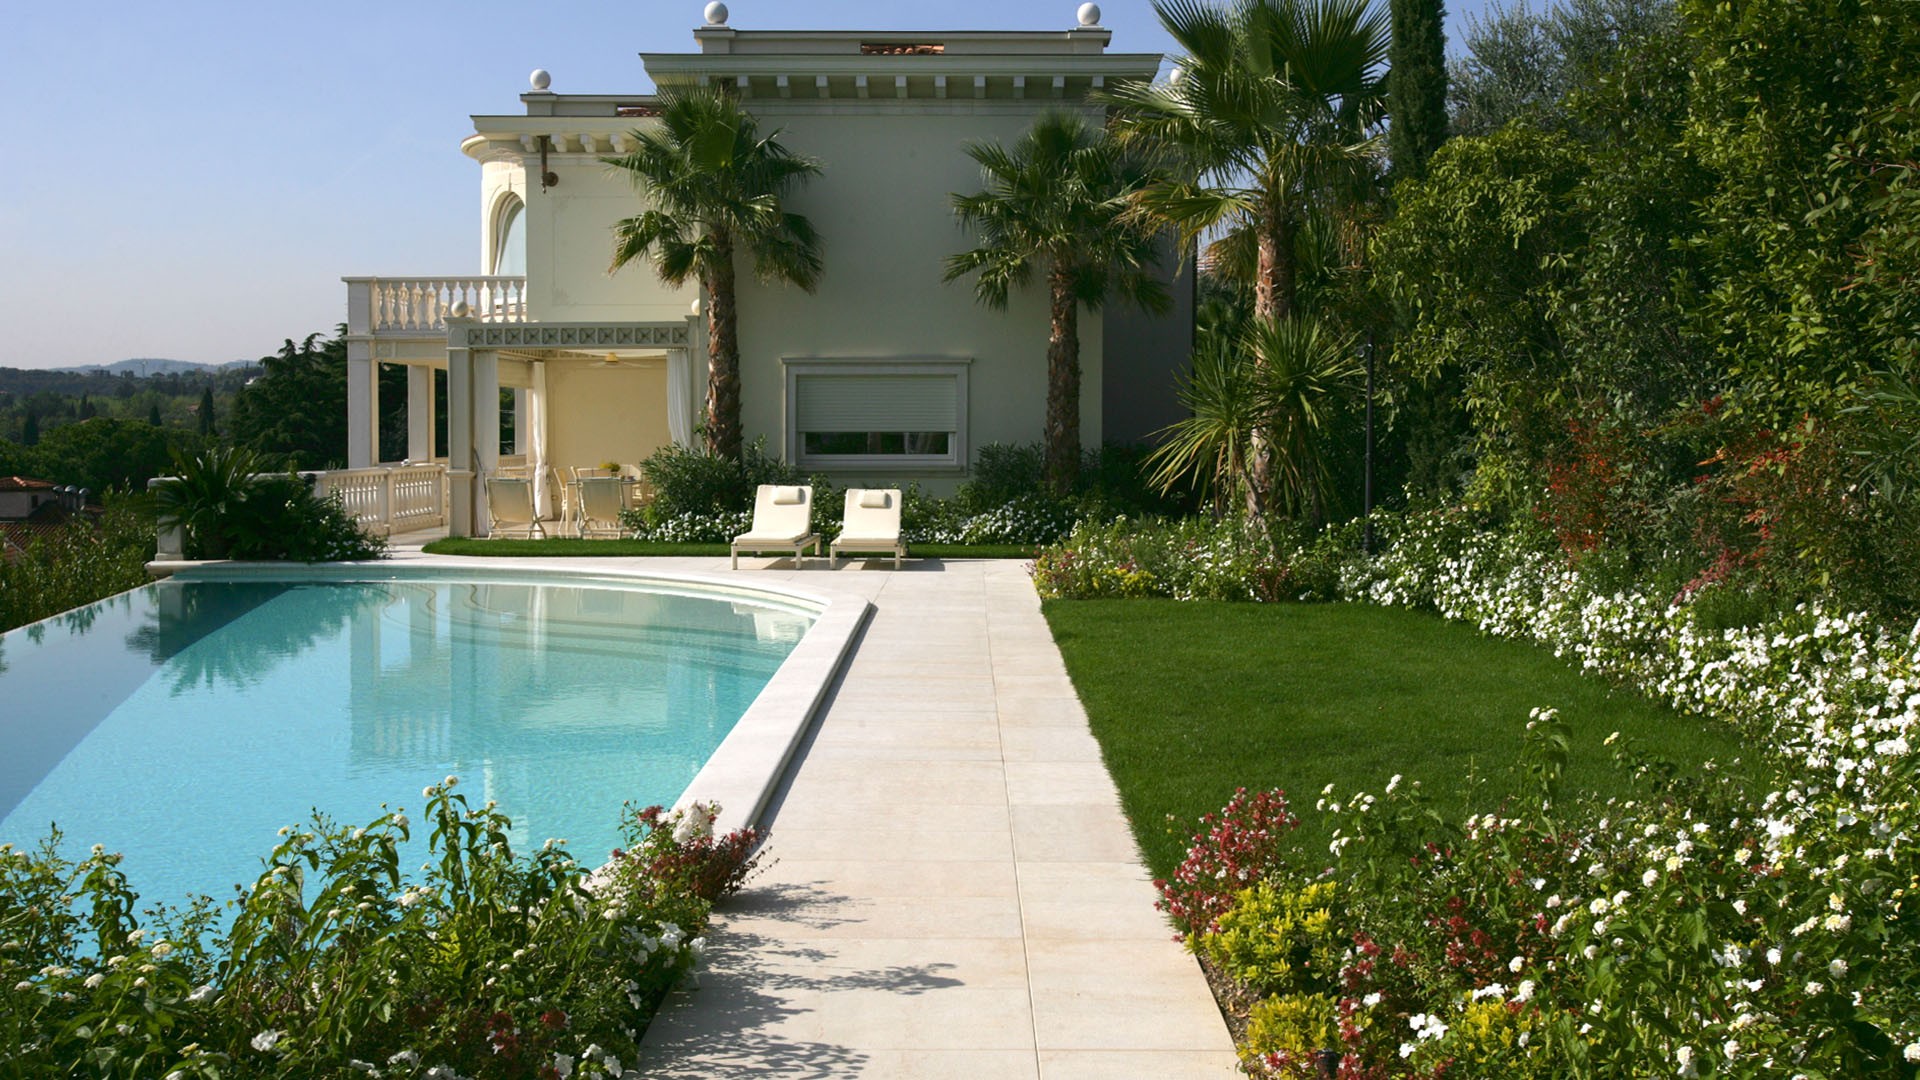 Giardino e piscina infinity per villa sul lago di garda for Immagini di giardini